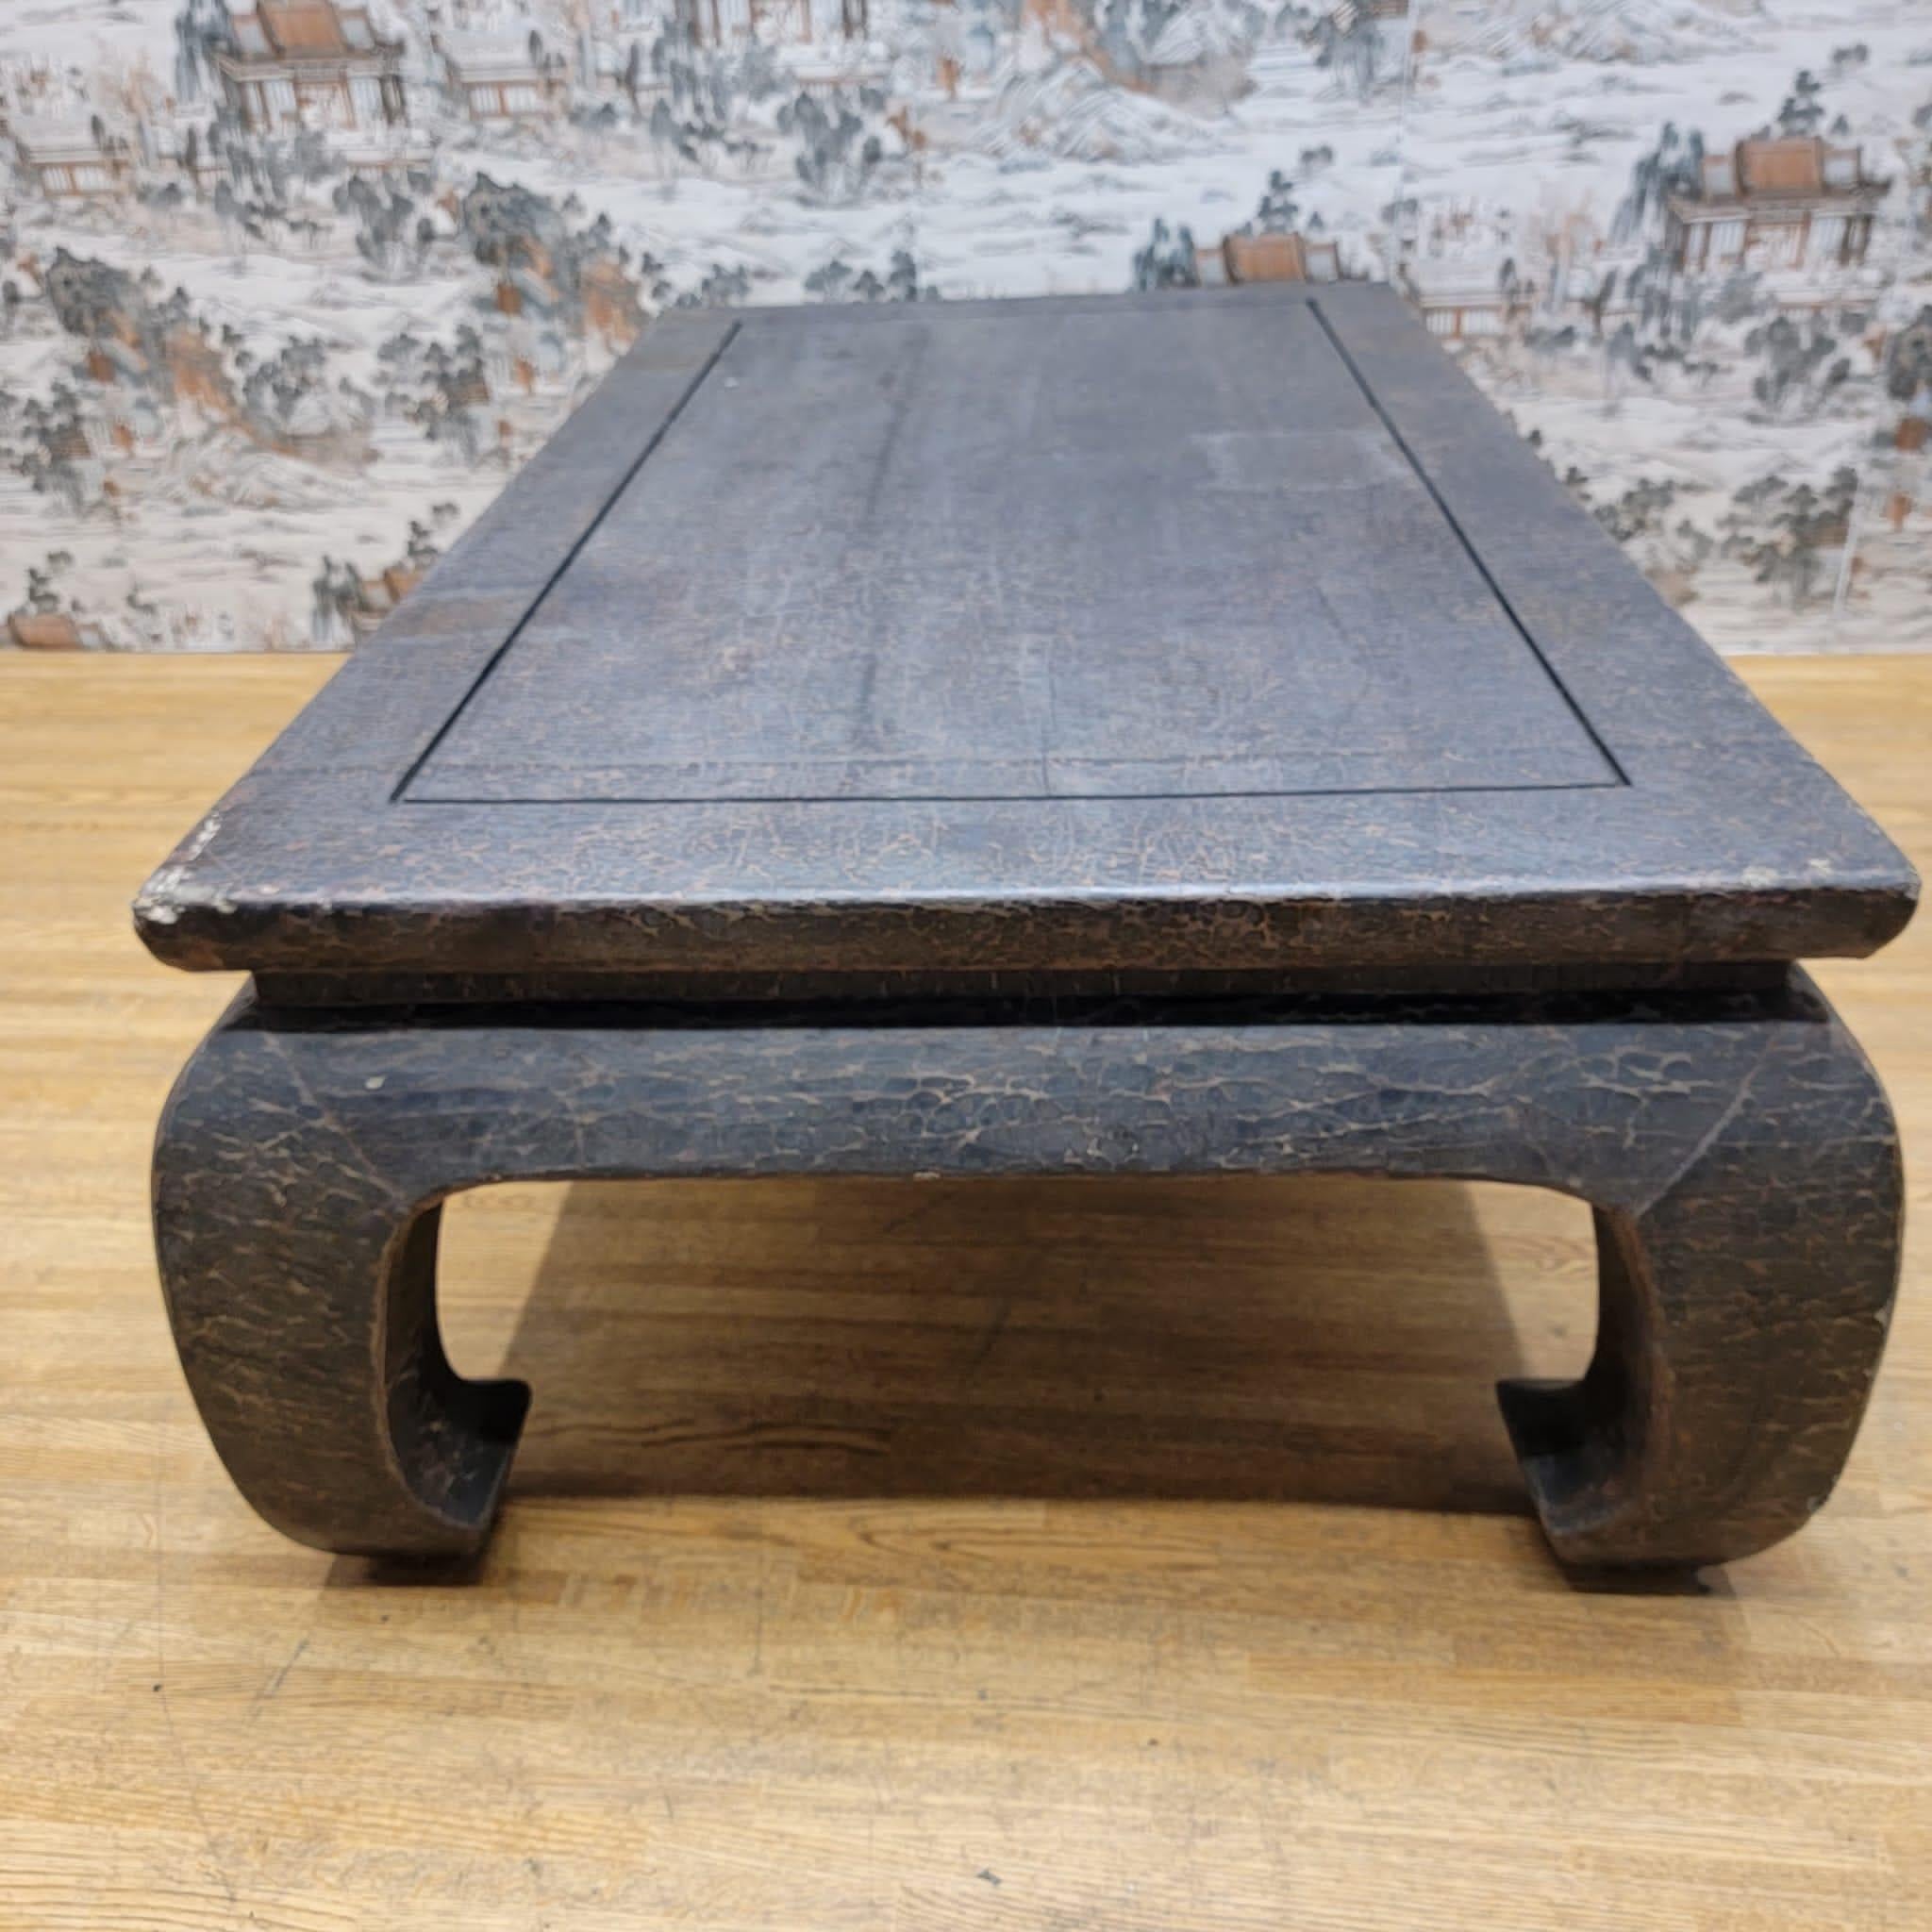 Table basse ancienne en orme laqué et enveloppé de lin de la province de Shanxi

Circa : 1900

Dimensions :

W : 55